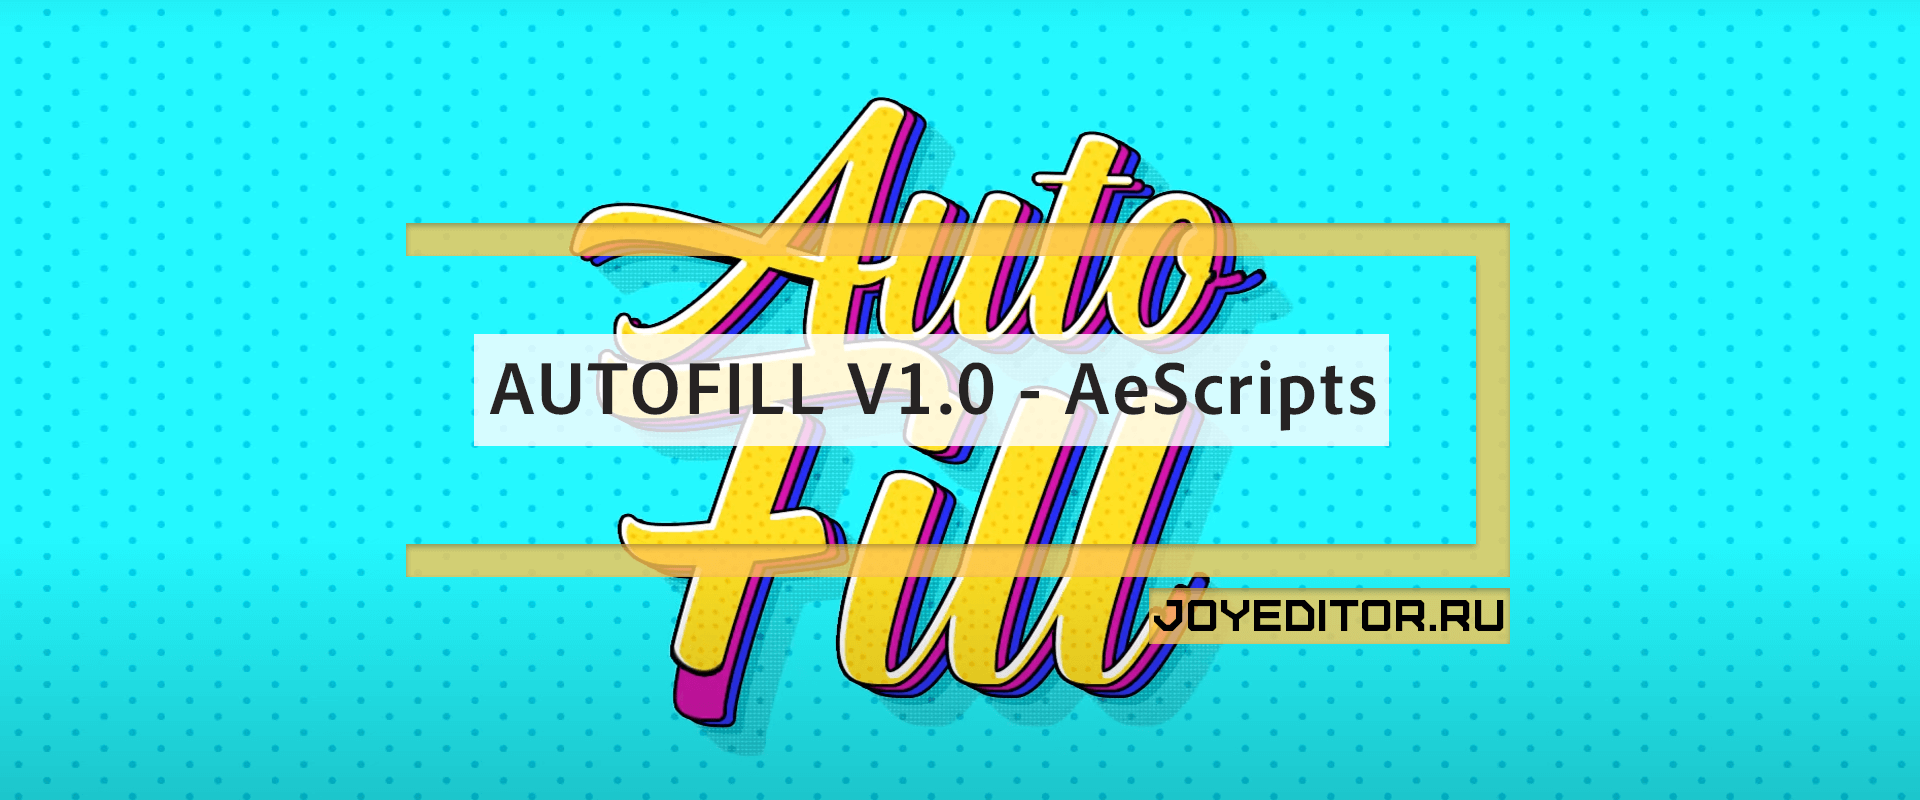 AUTOFILL V1.0 - AeScripts